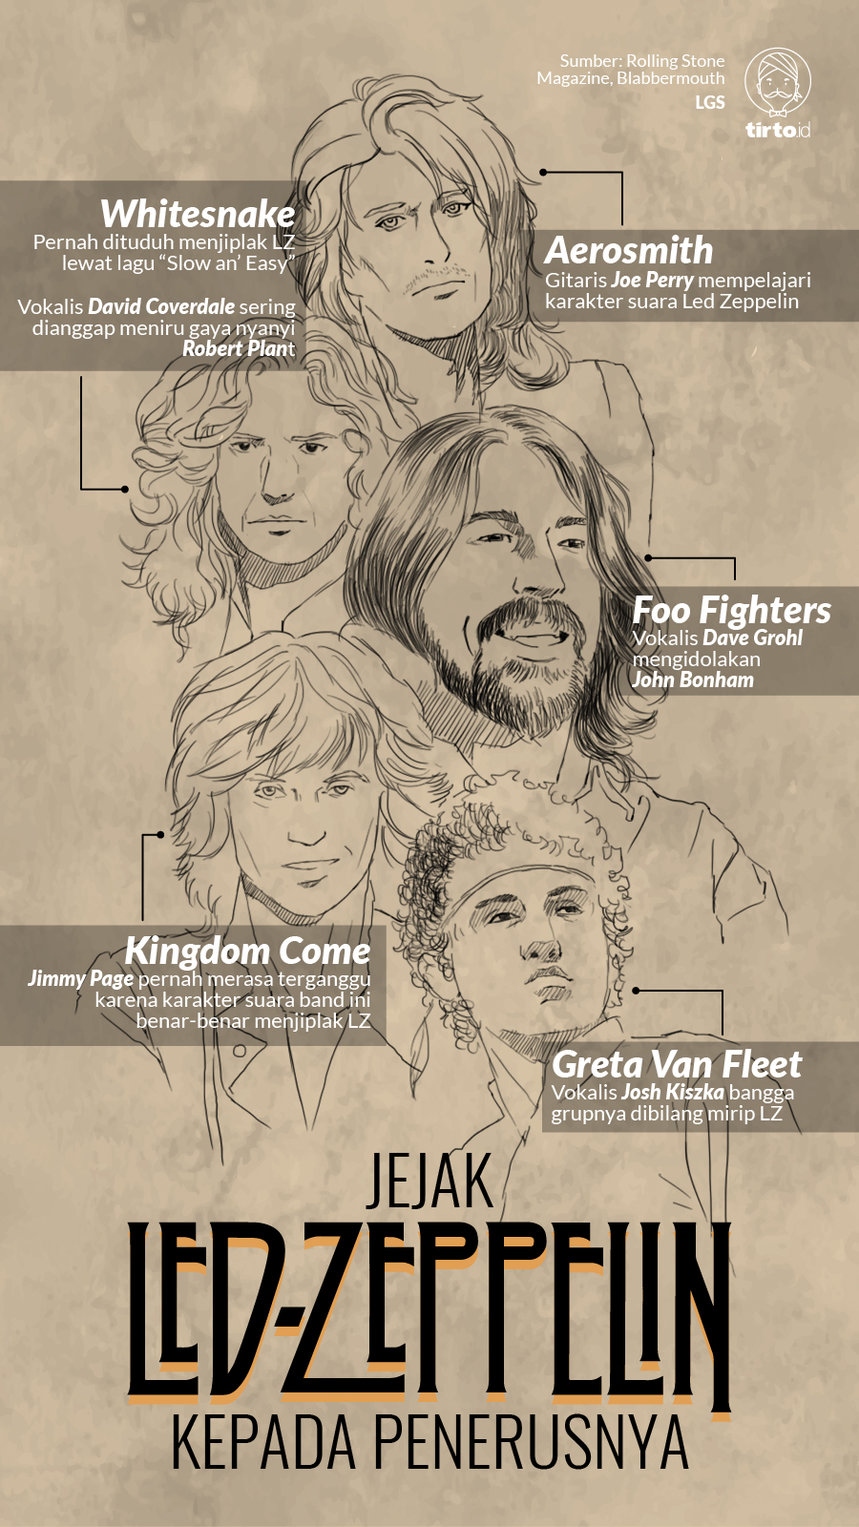 Infografik HL Indepth Led Zeppelin